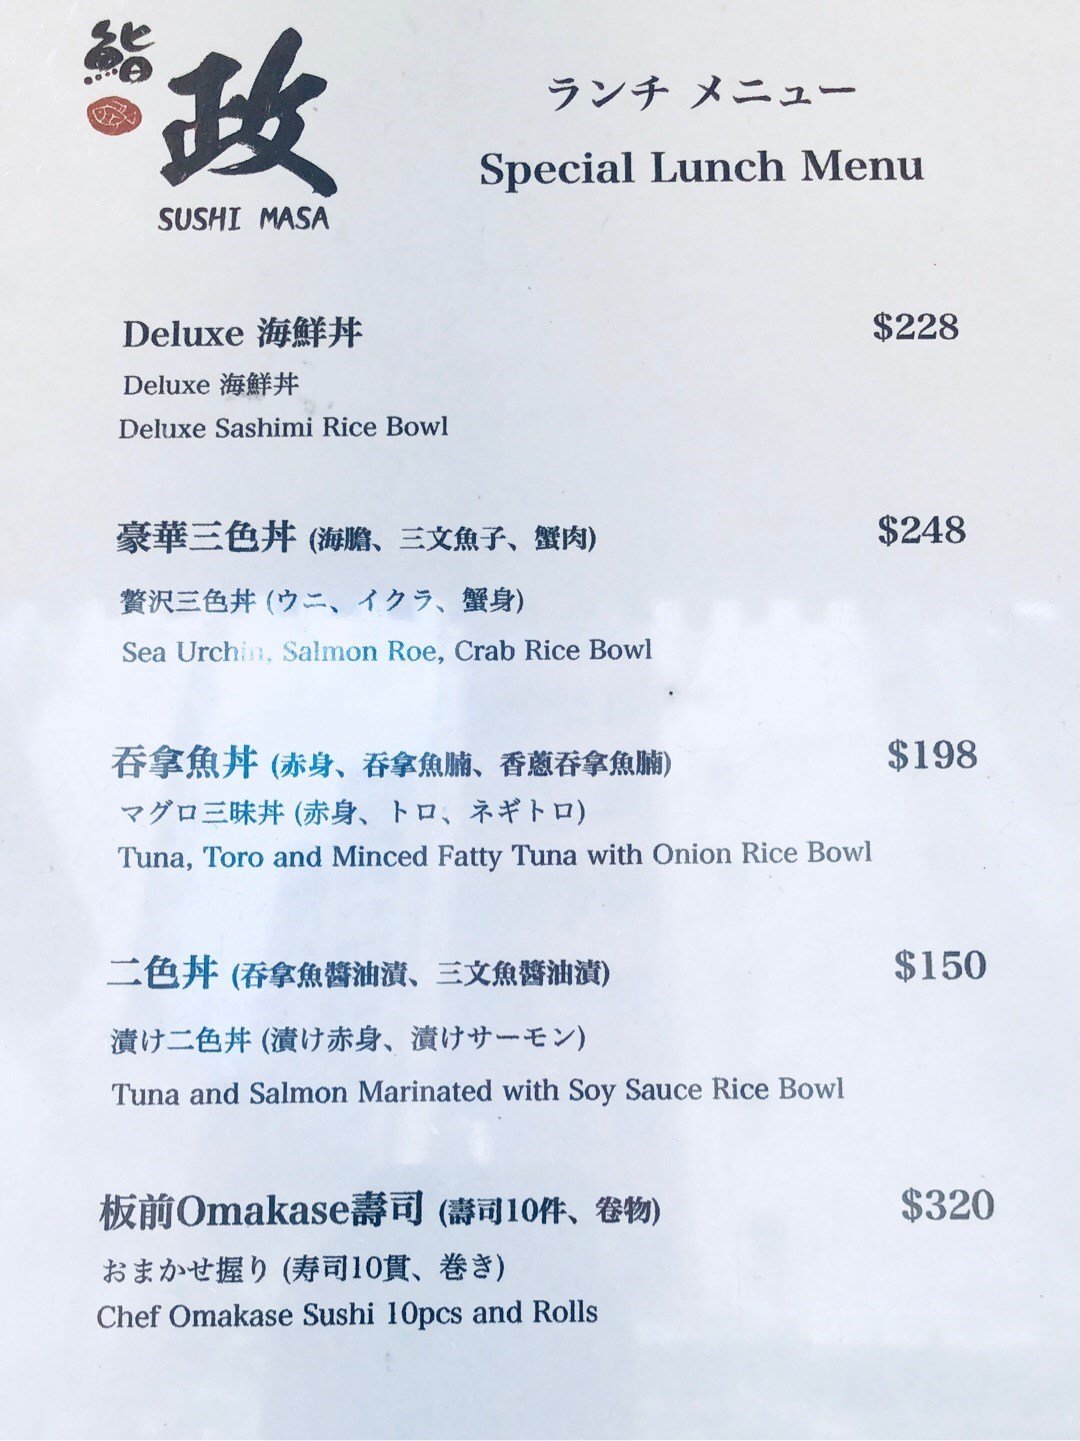 Sushi Masa In Sheung Wan Hong Kong Openrice Hong Kong